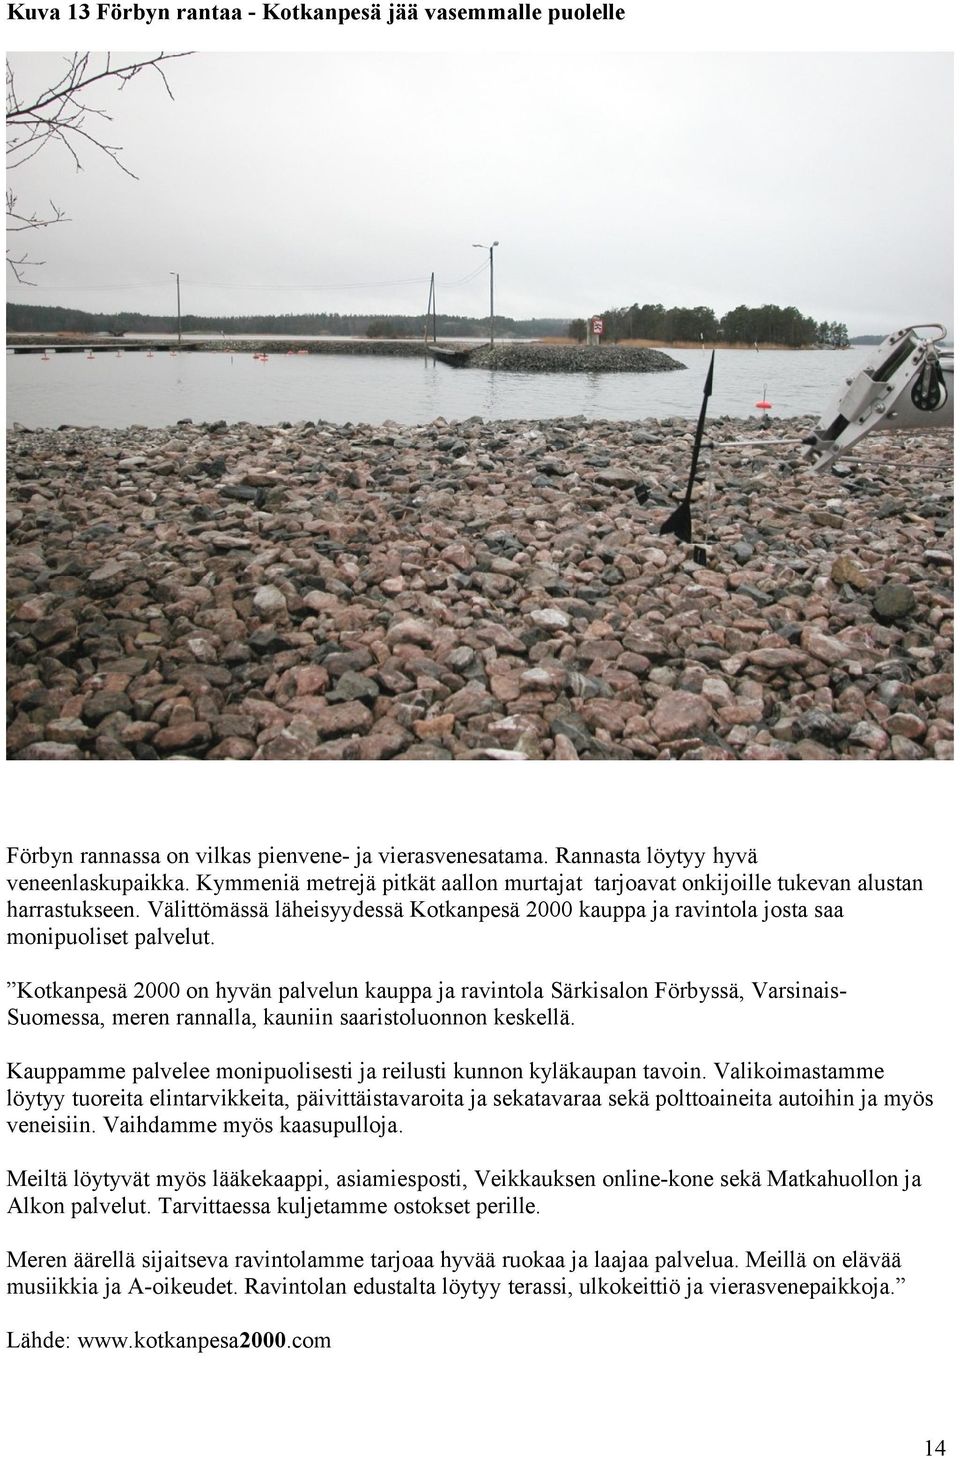 Kotkanpesä 2000 on hyvän palvelun kauppa ja ravintola Särkisalon Förbyssä, VarsinaisSuomessa, meren rannalla, kauniin saaristoluonnon keskellä.